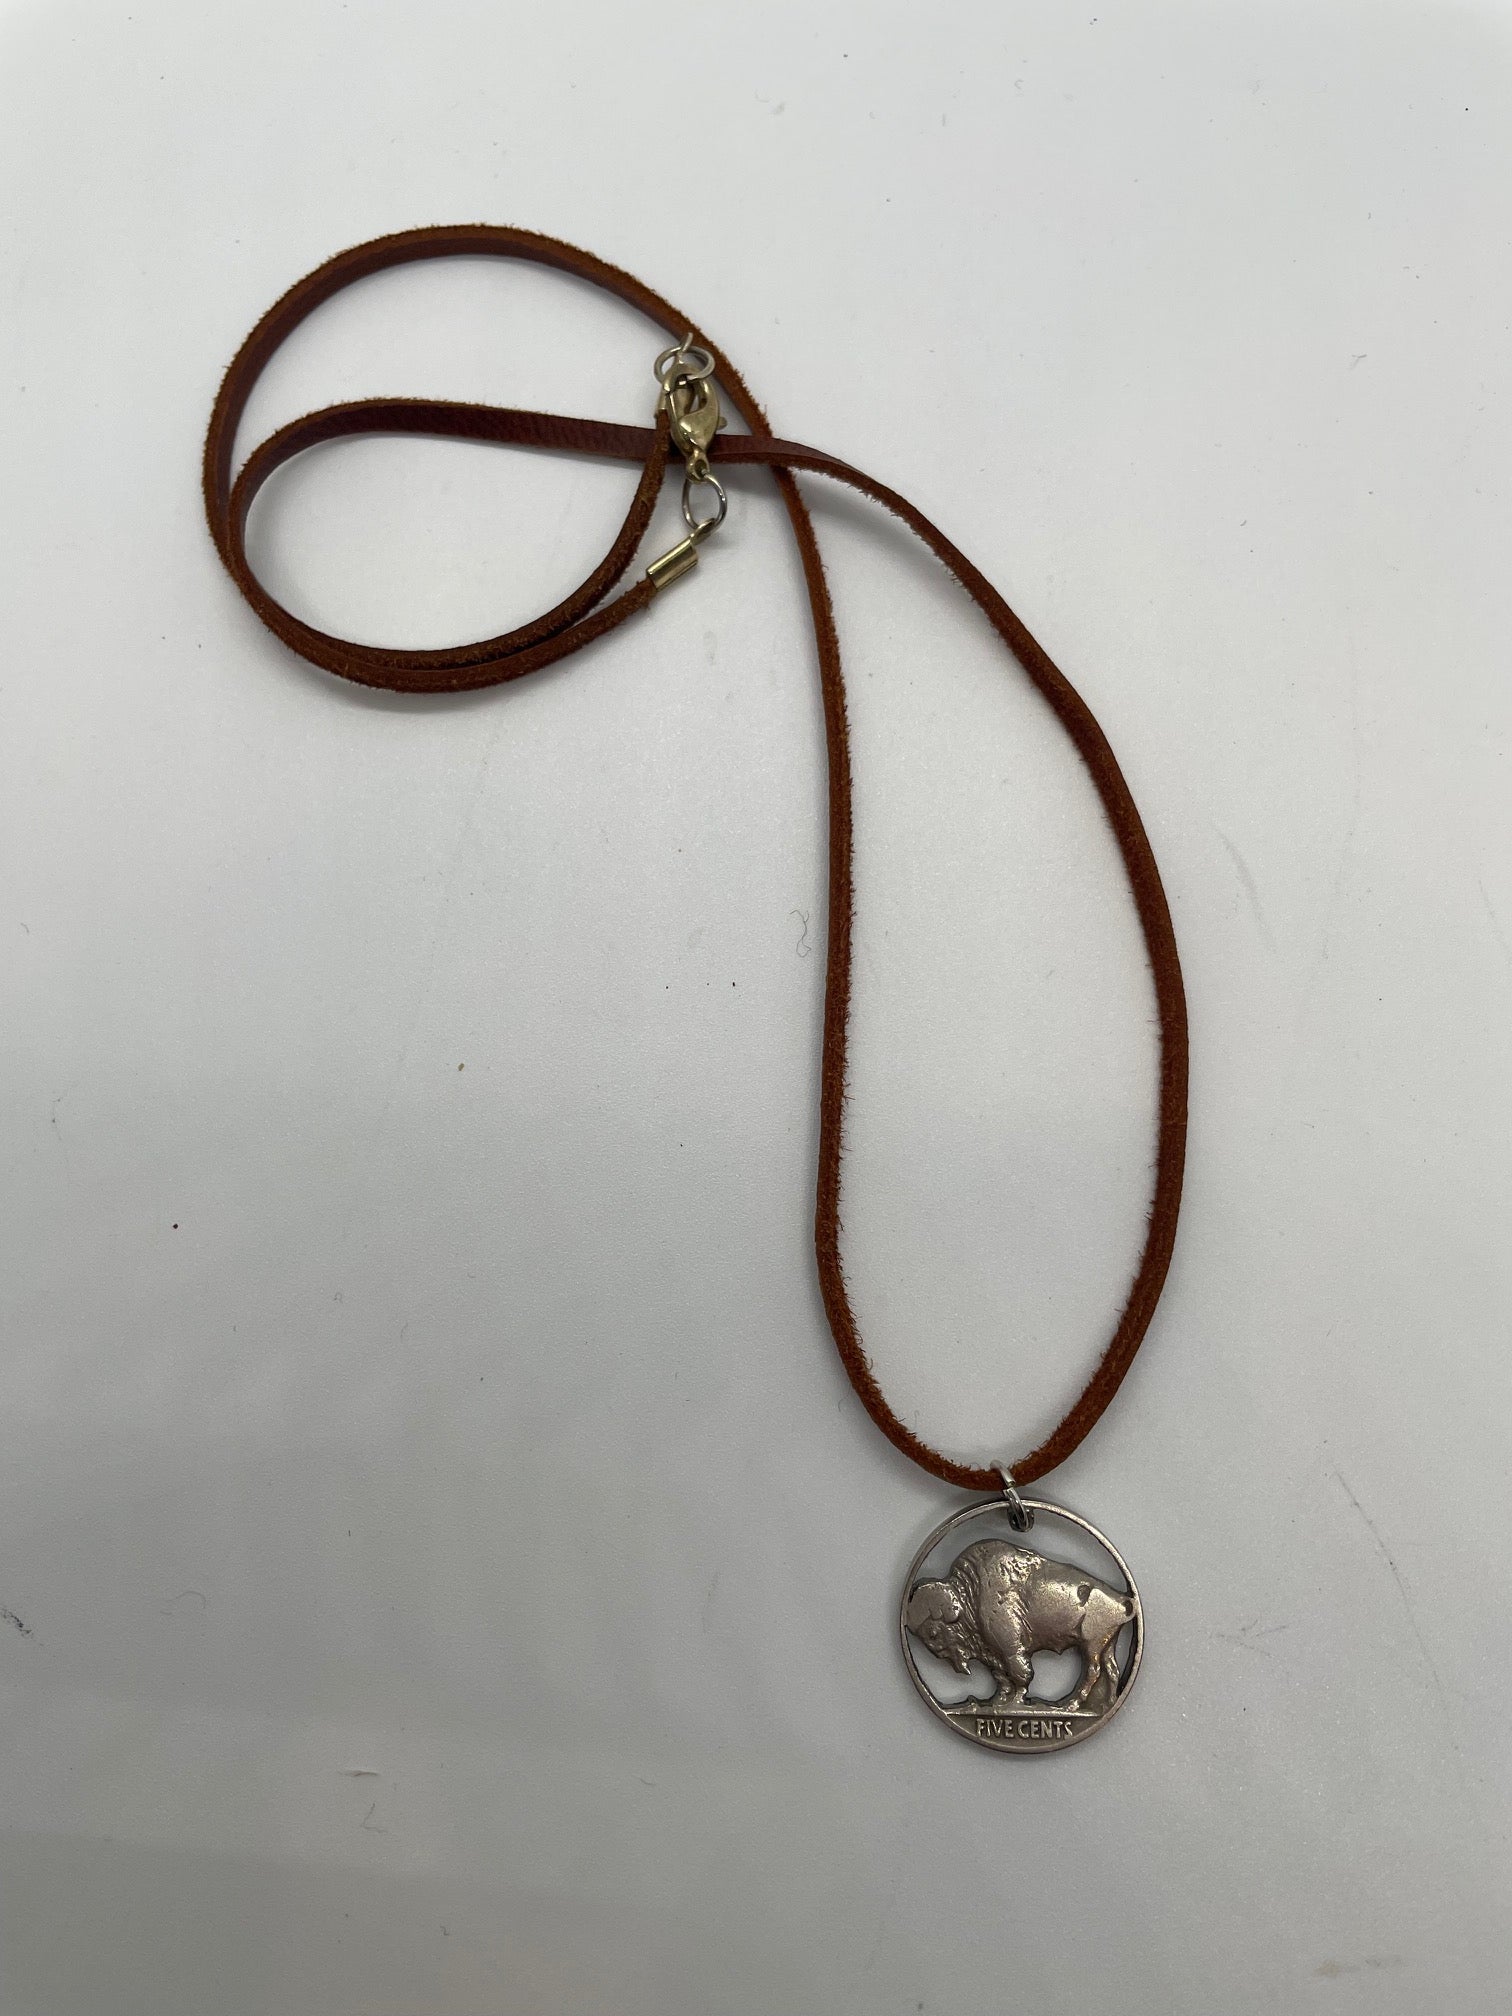 Buffalo Nickel Necklace